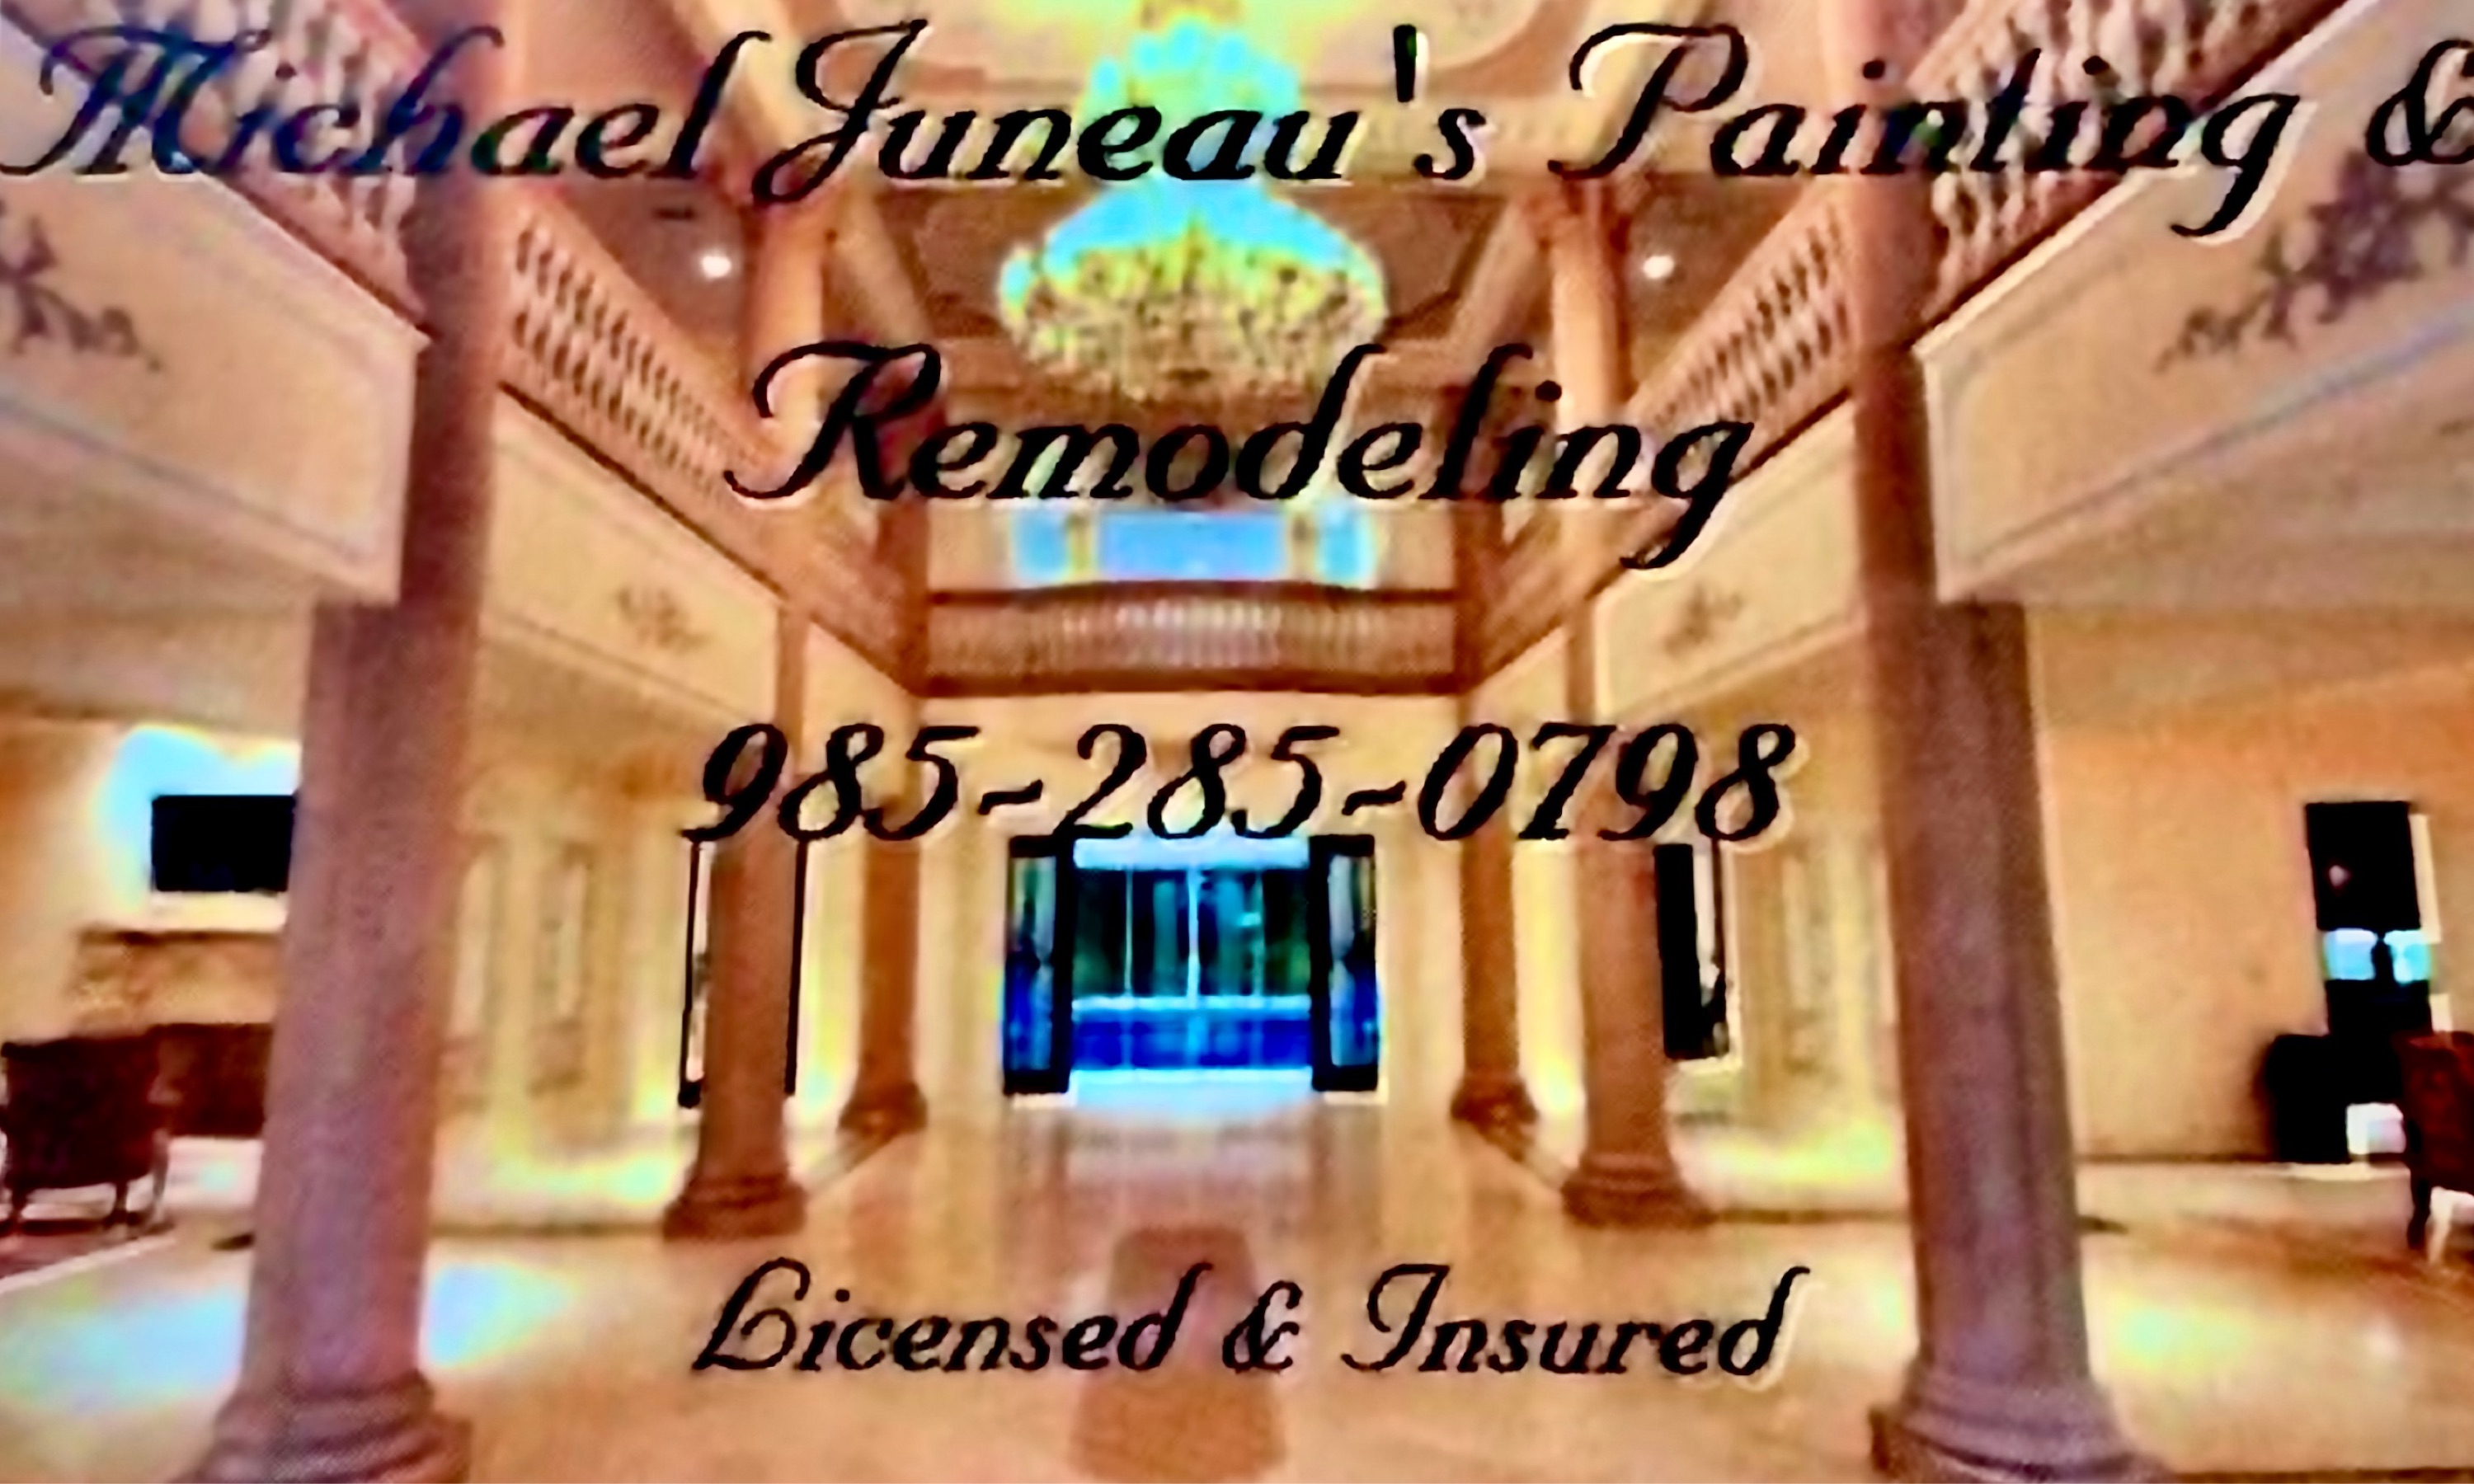 Michael Juneaus Painting & Remodeling Logo